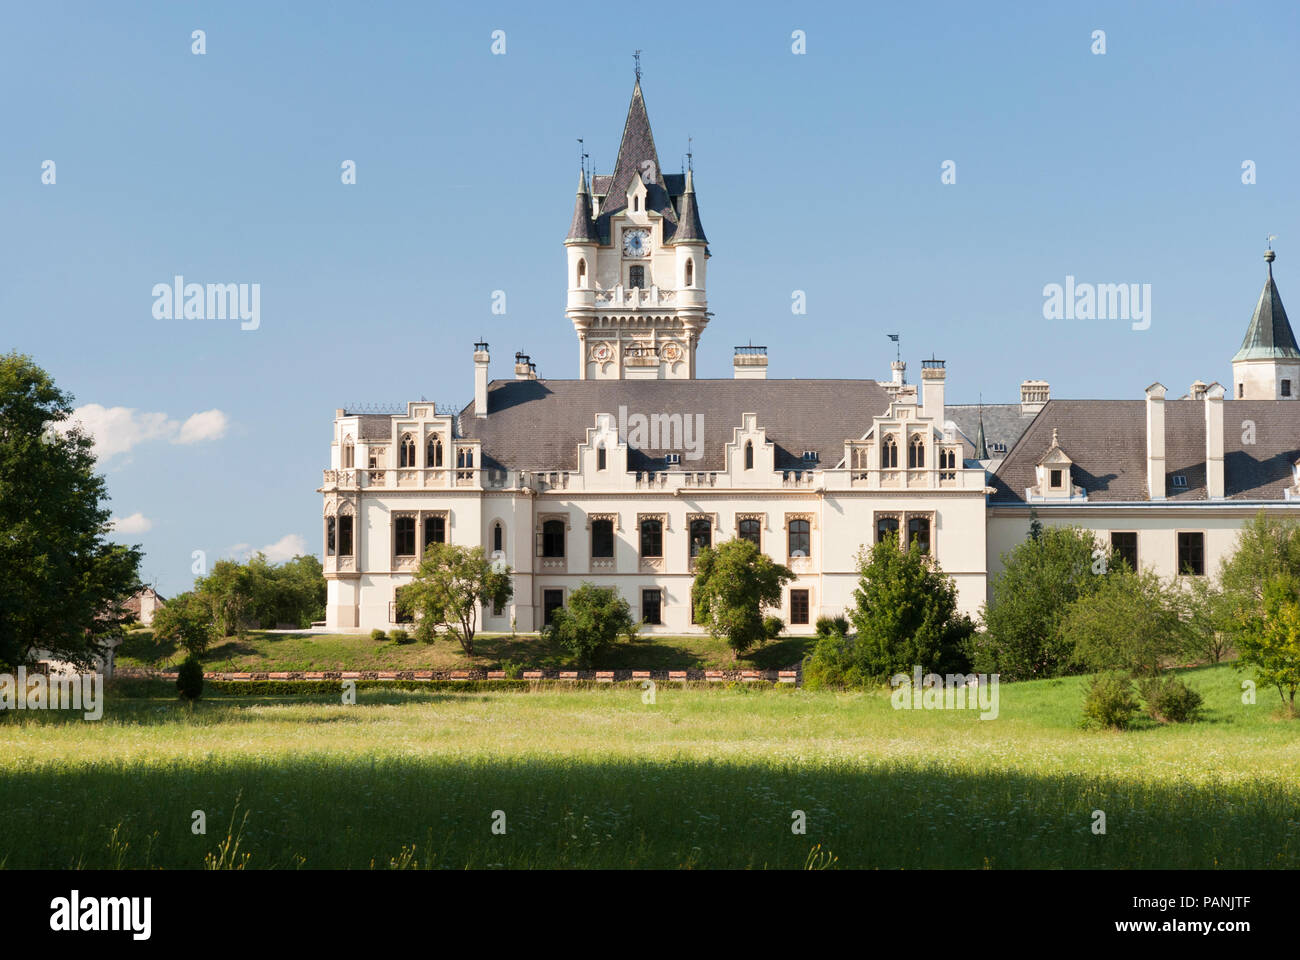 Schloss Grafenegg in Niederösterreich ist das bekannteste Beispiel für romantischen Historismus in Österreich & ist ein beliebtes Touristenziel & Konzertort Stockfoto